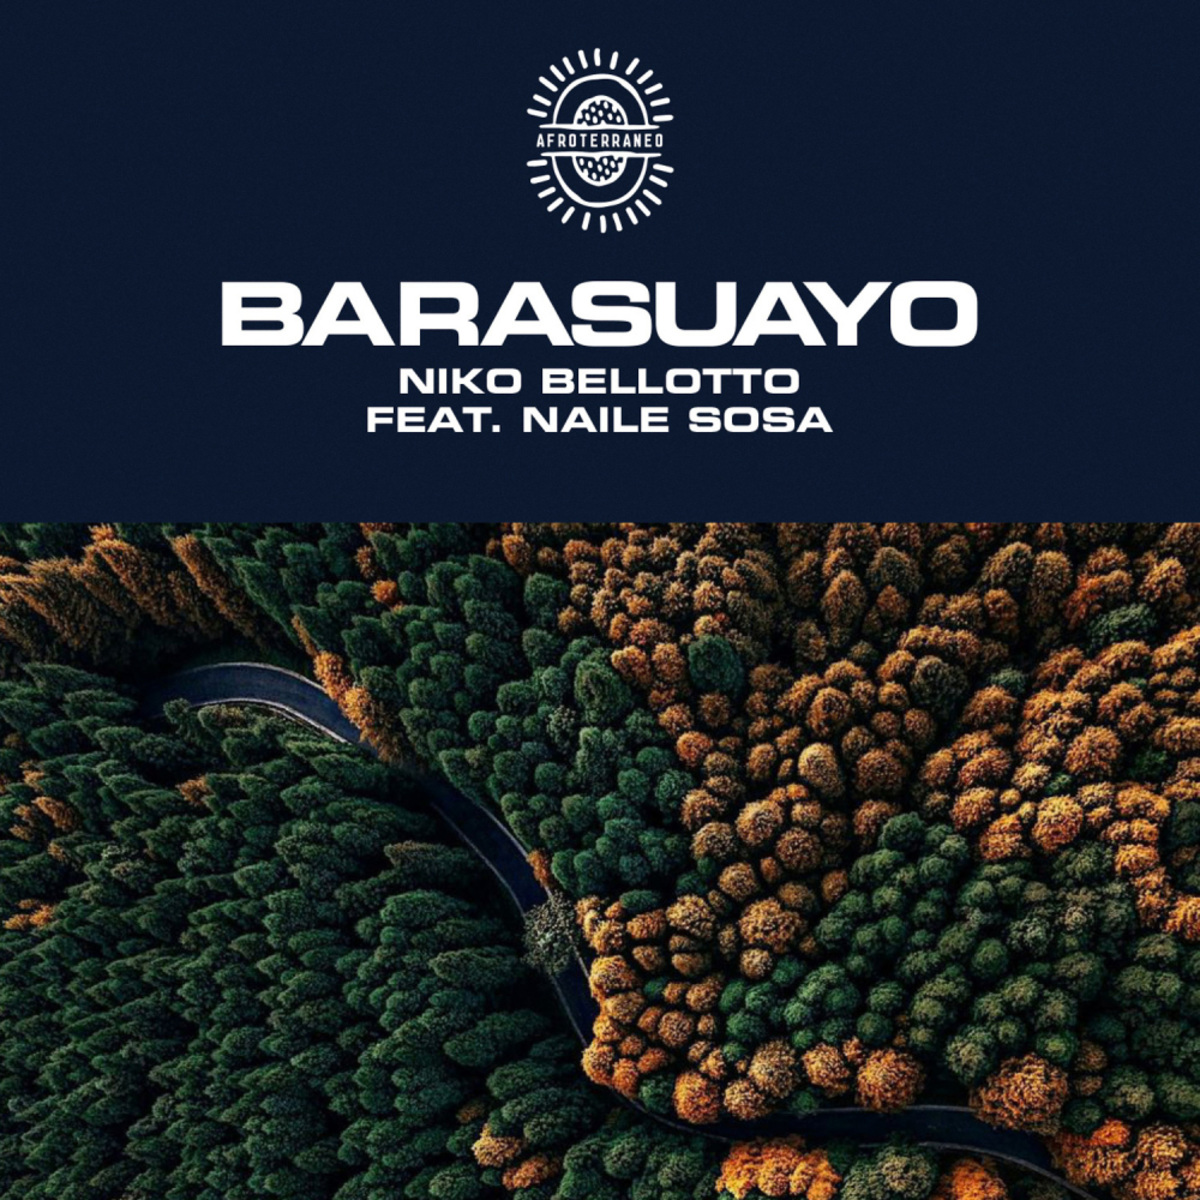 Niko Bellotto - Barasuayo / Afroterraneo Music